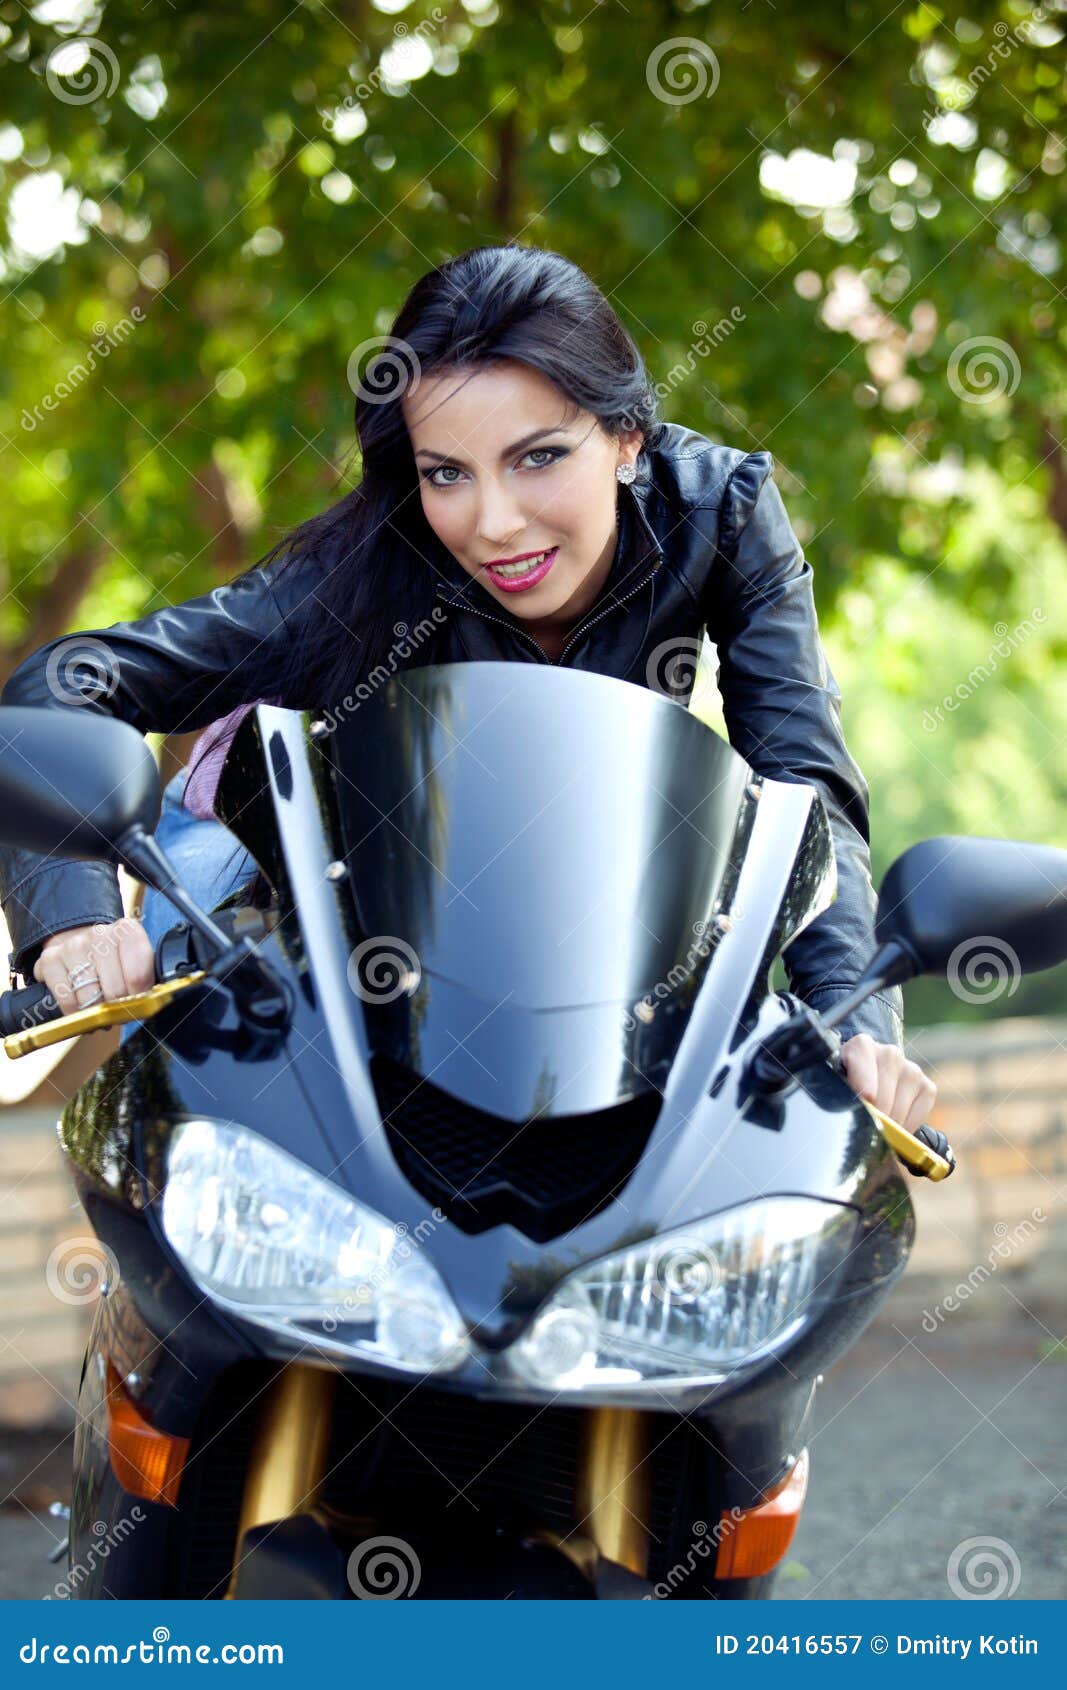 Biker girl stock image. Image of individuality, human - 20416557